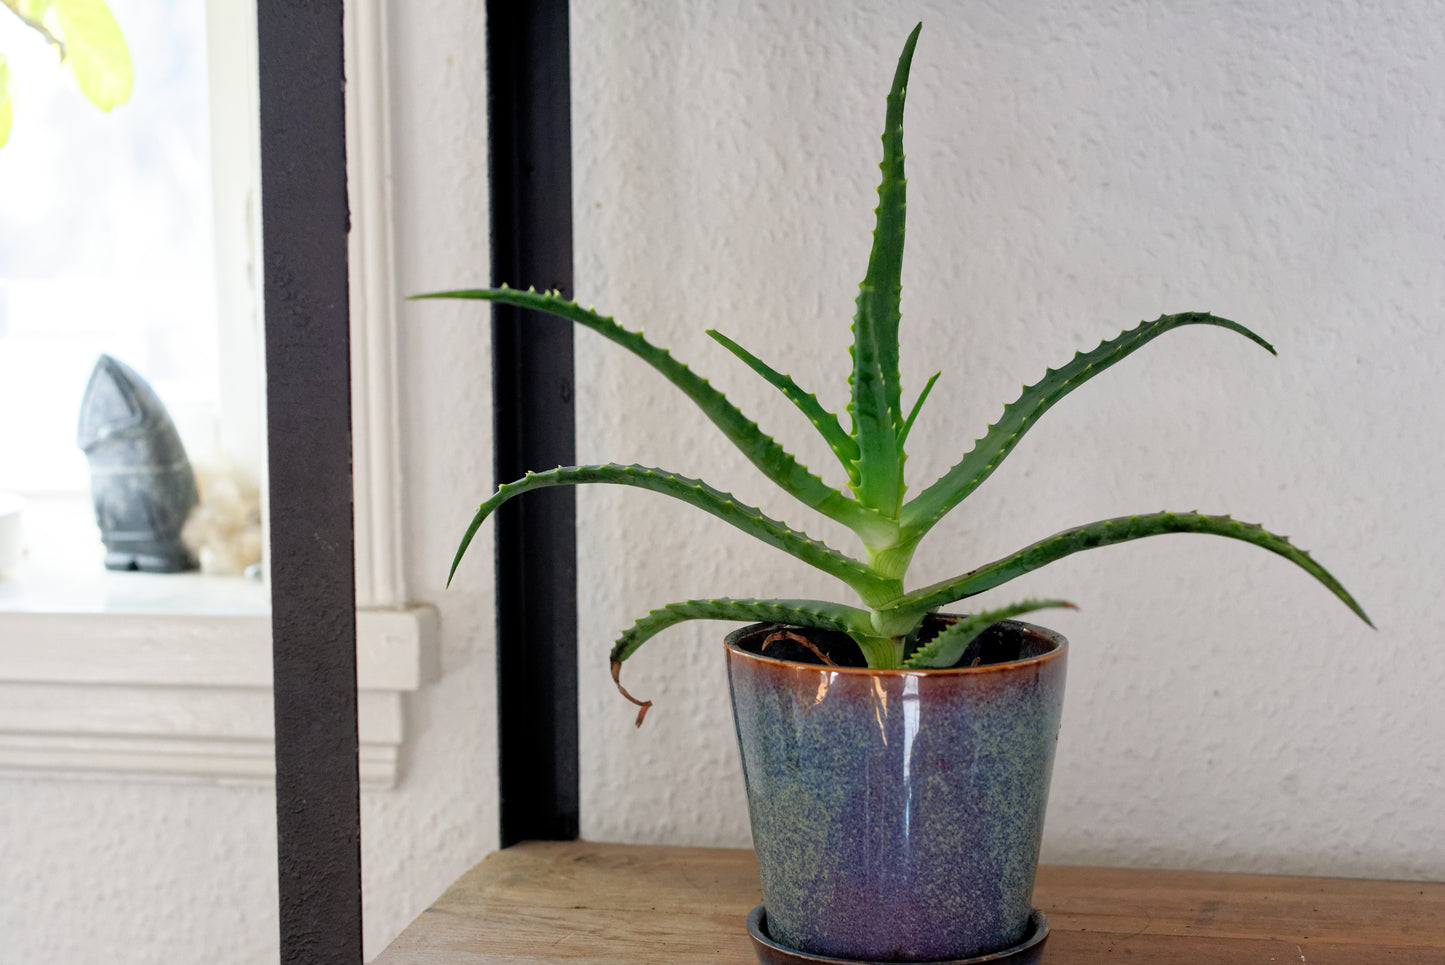 Lille plante af Aloe (Aloe arborescens) i blåglaseret potte